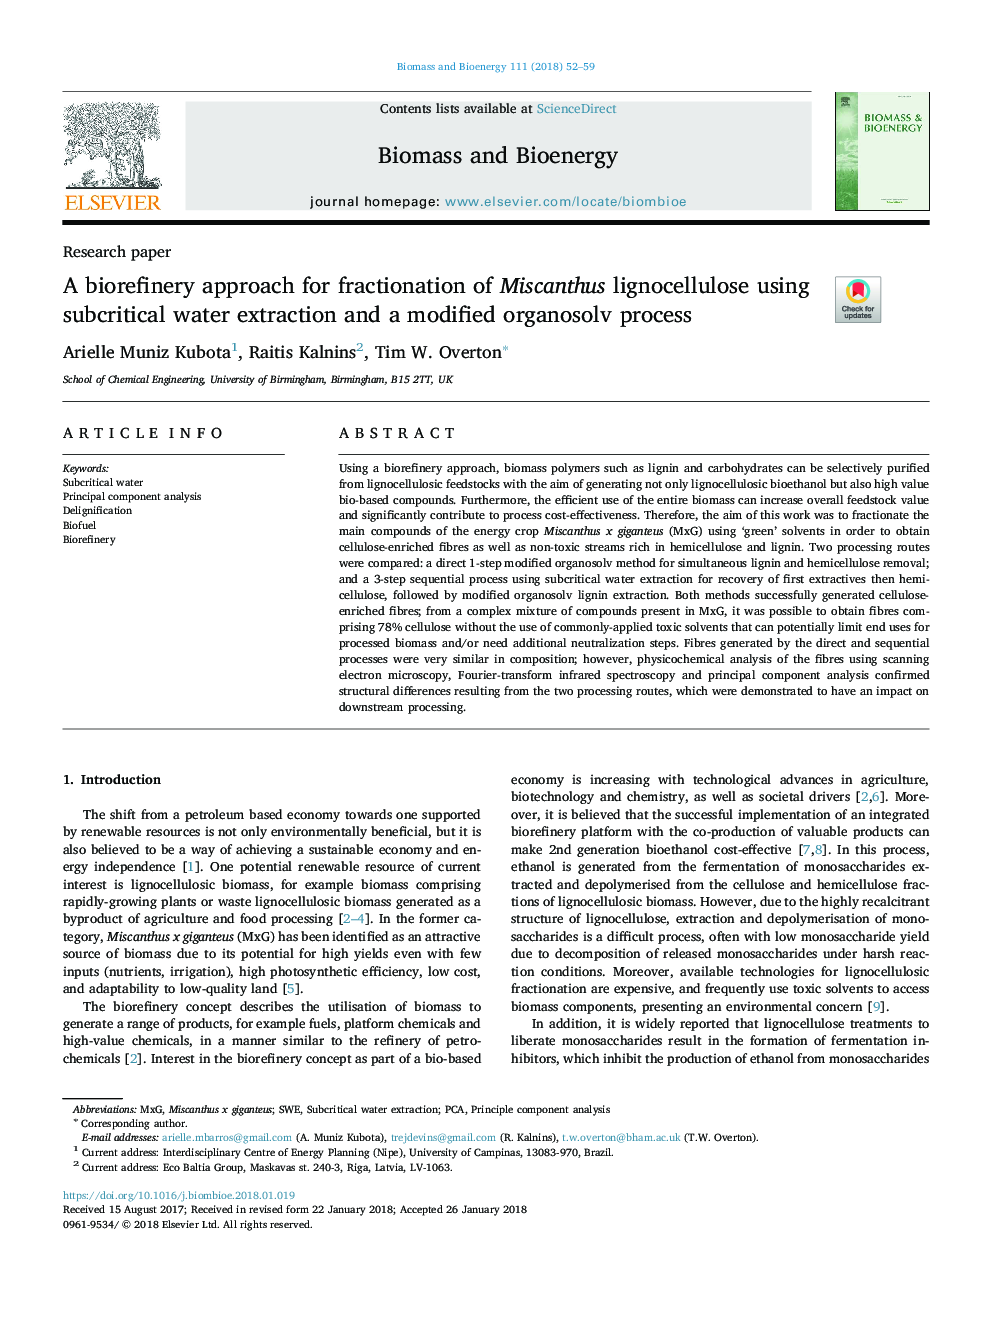 یک رویکرد بیورفینزر برای تقلیل مایکانتوس لیگنوسلولوز با استفاده از استخراج آب زیر کریستال و یک فرآیند ارگانواسولف اصلاح شده 